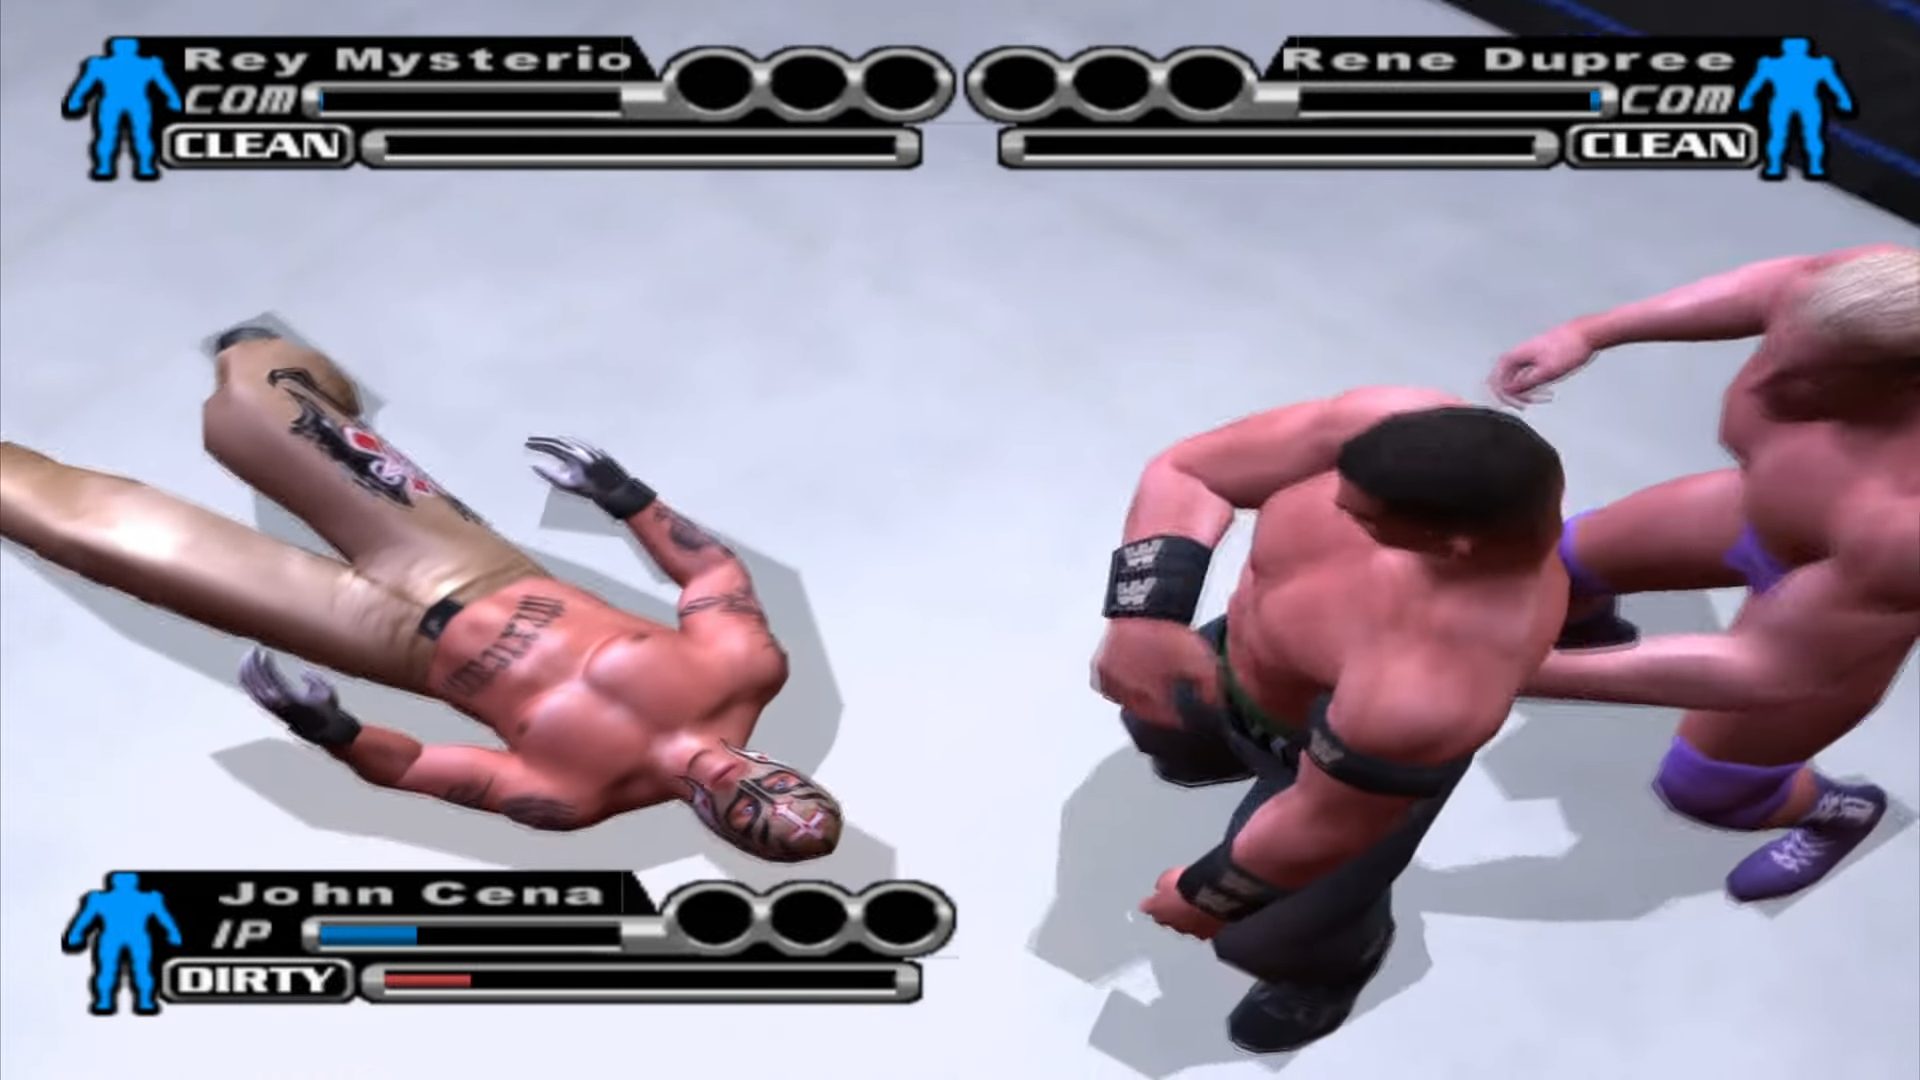 WWE SmackDown! vs. Raw (USA) PS2 ISO - CDRomance